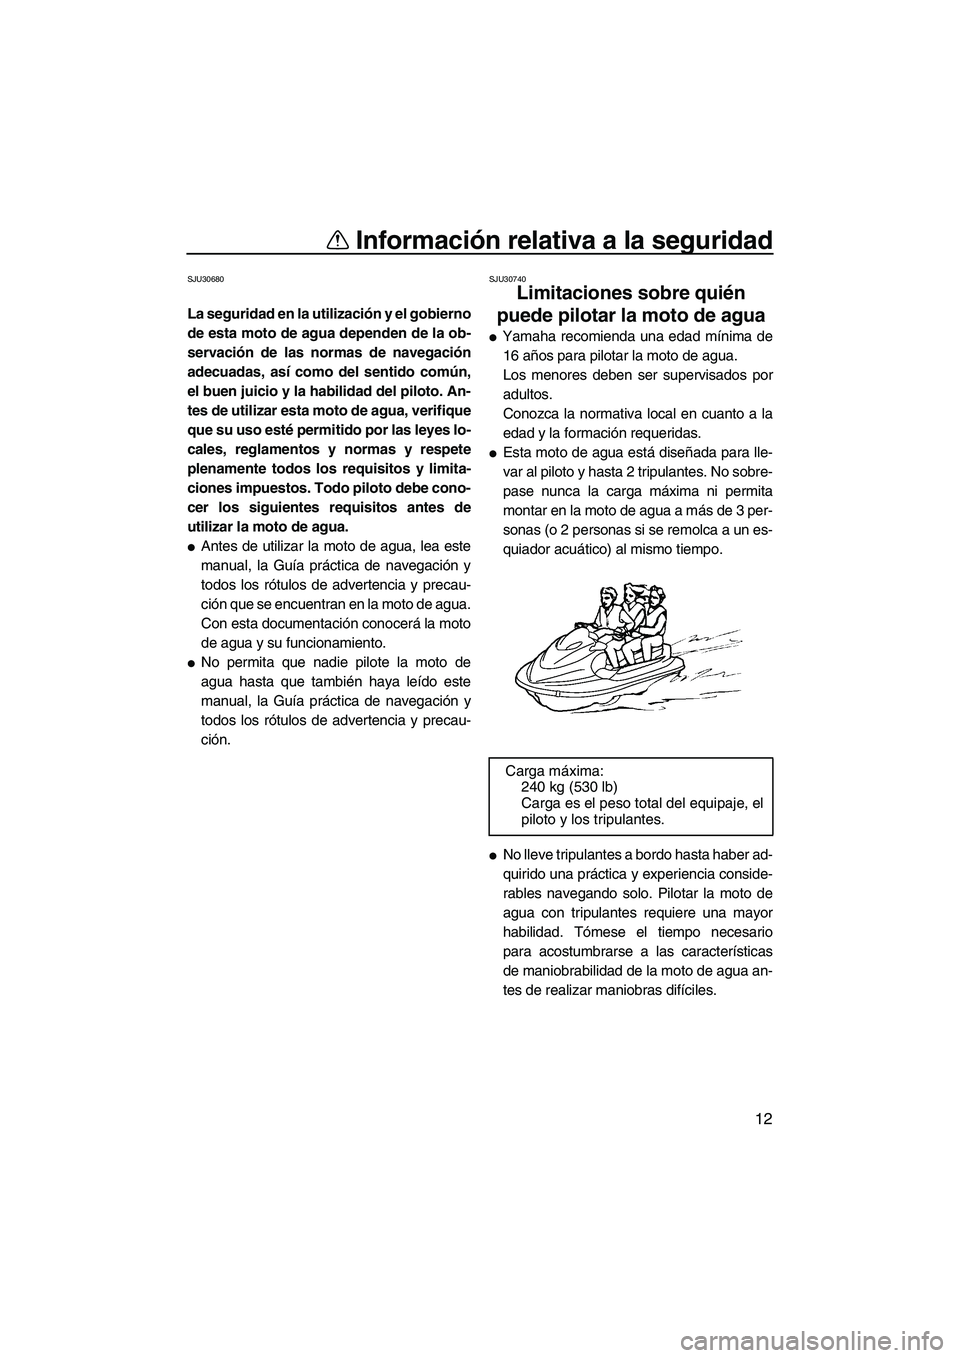 YAMAHA VX 2007  Manuale de Empleo (in Spanish) Información relativa a la seguridad
12
SJU30680
La seguridad en la utilización y el gobierno
de esta moto de agua dependen de la ob-
servación de las normas de navegación
adecuadas, así como del 